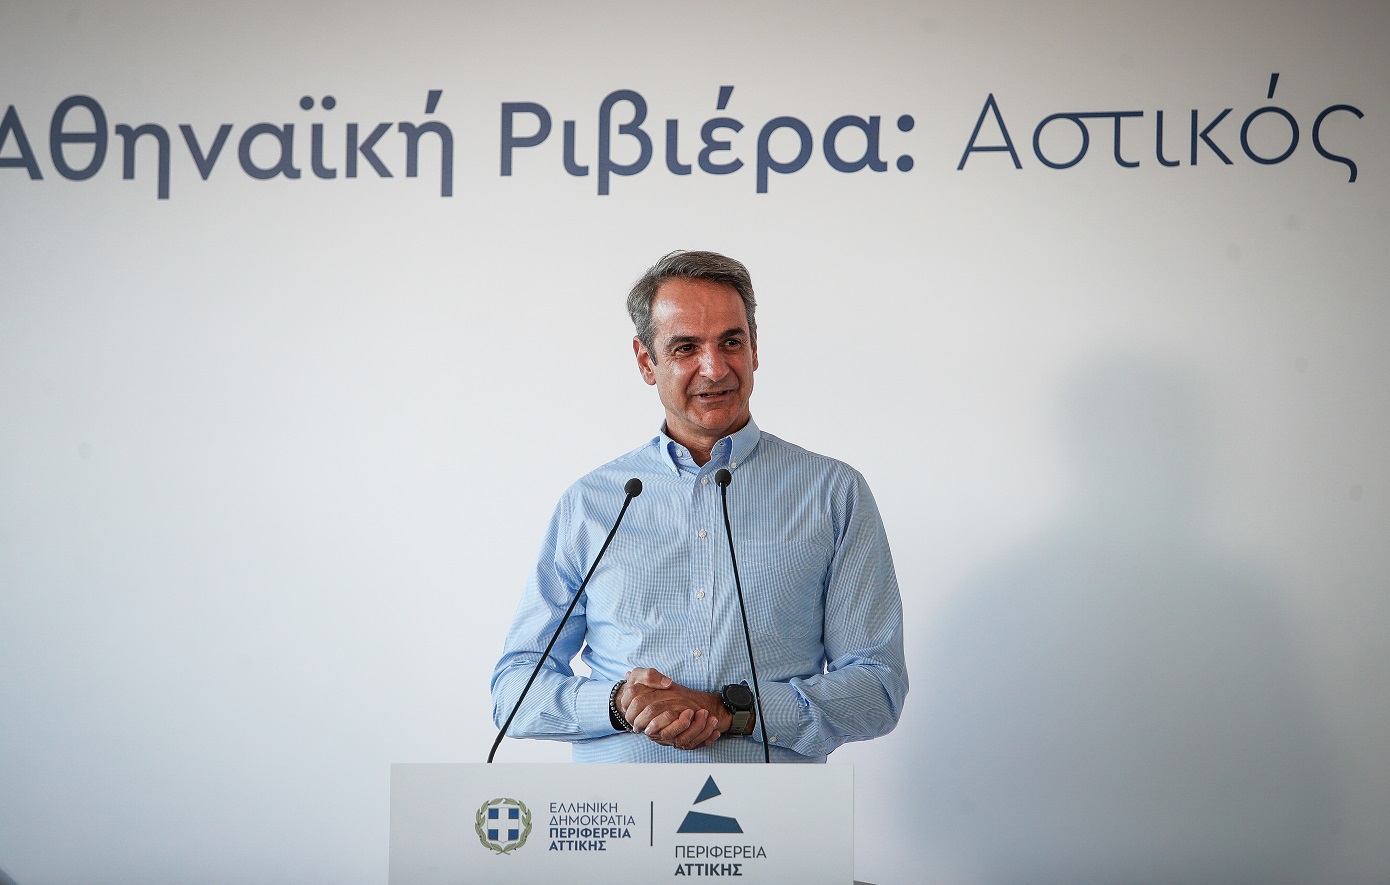 Μητσοτάκης για «Αθηναϊκή Ριβιέρα»: Πολύ σημαντικό το αναπτυξιακό αποτύπωμα και όχι σε βάρος των τοπικών κοινωνιών